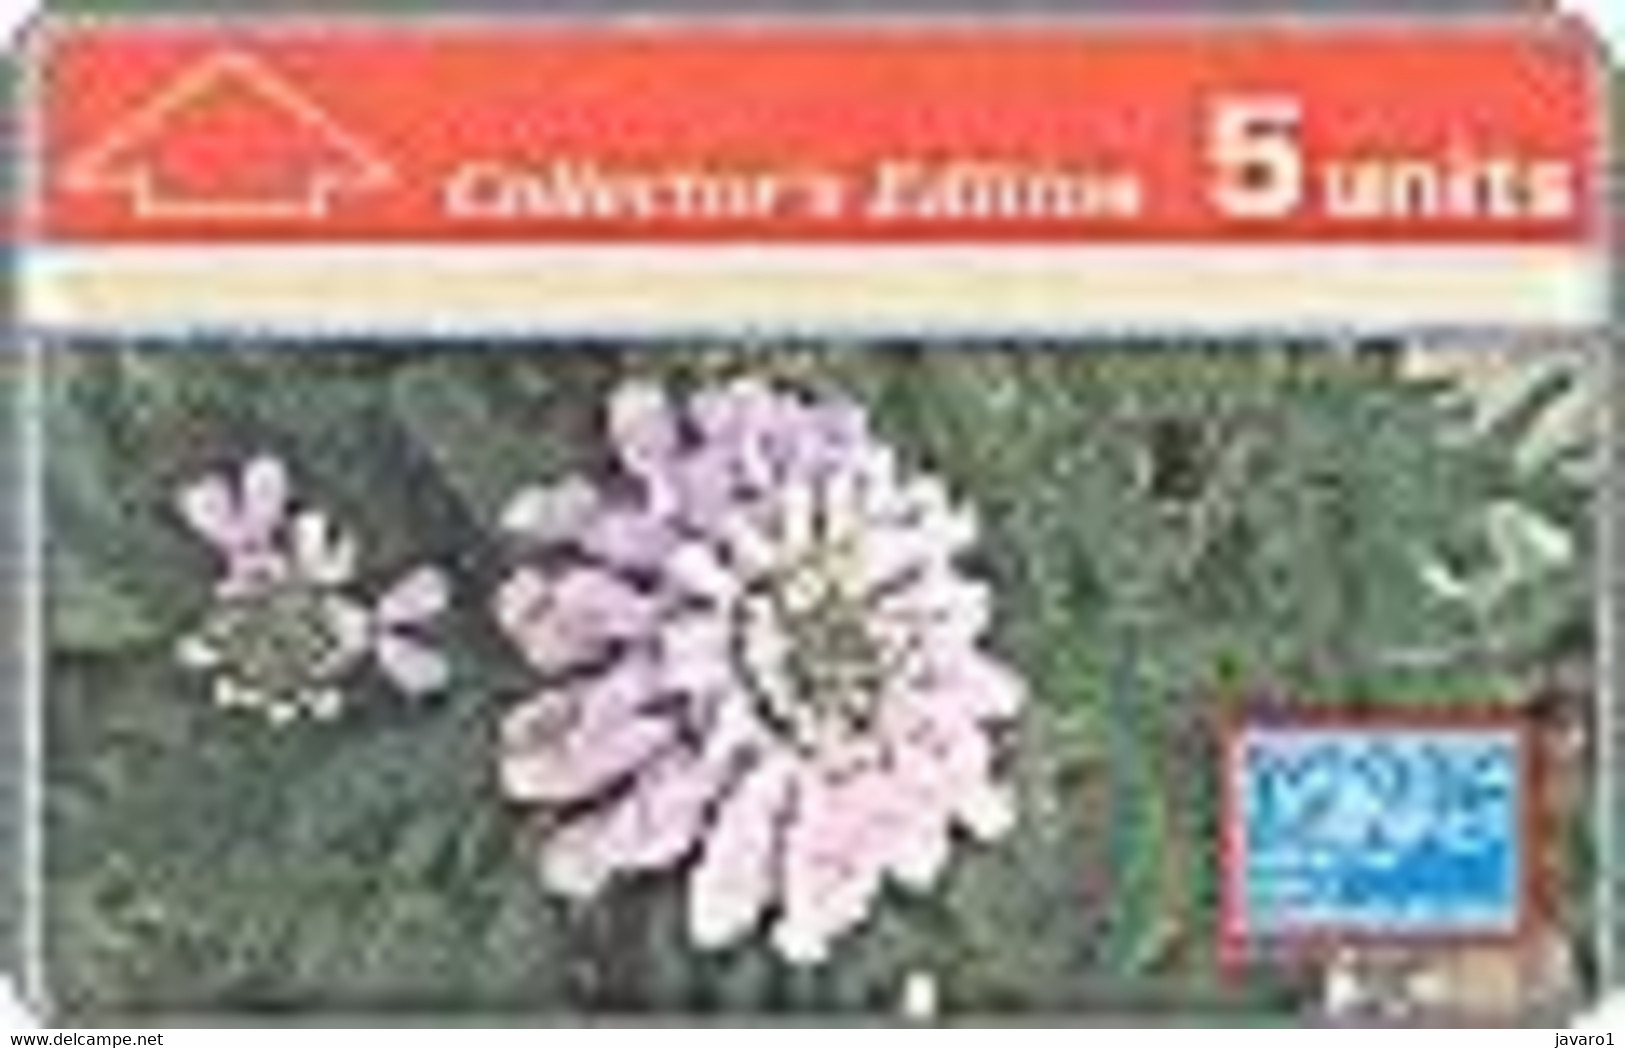 GIBRALTAR : GIB020/2 Nature Series 1992 (Flowers) MINT - Gibilterra